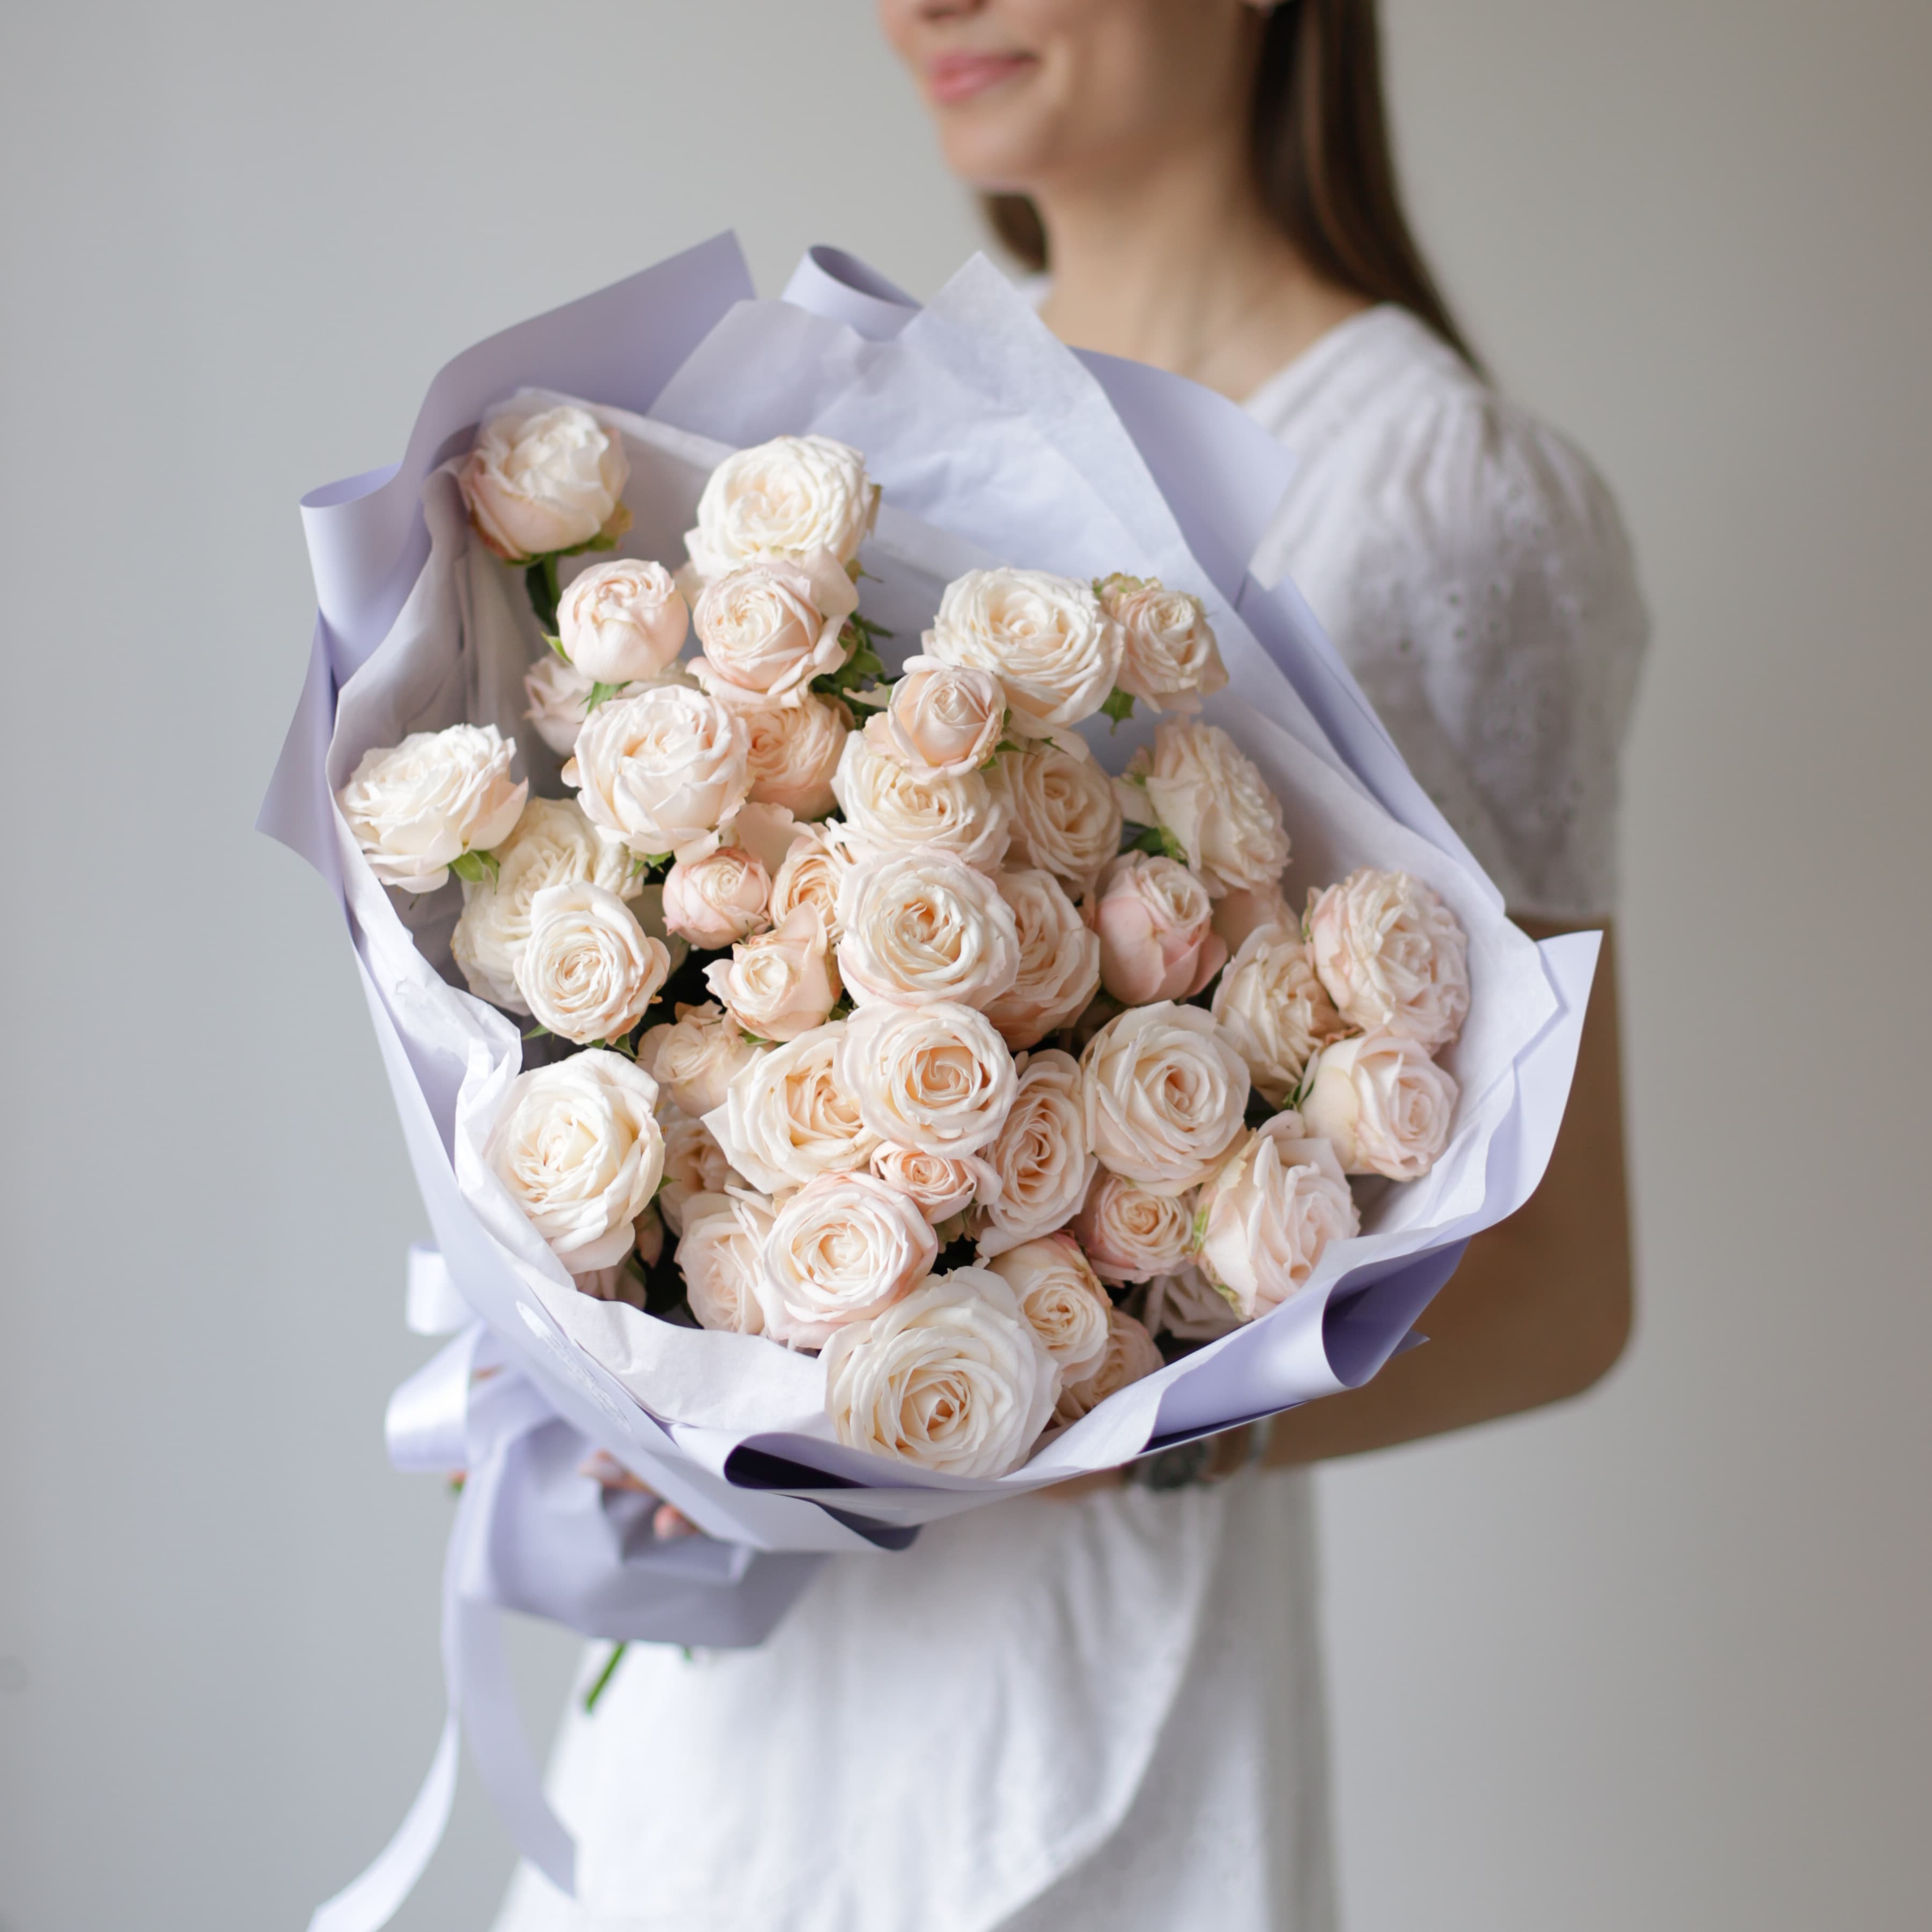 Кустовые пионовидные розы кремового оттенка в лавандовом оформлении №1494 - Фото 22